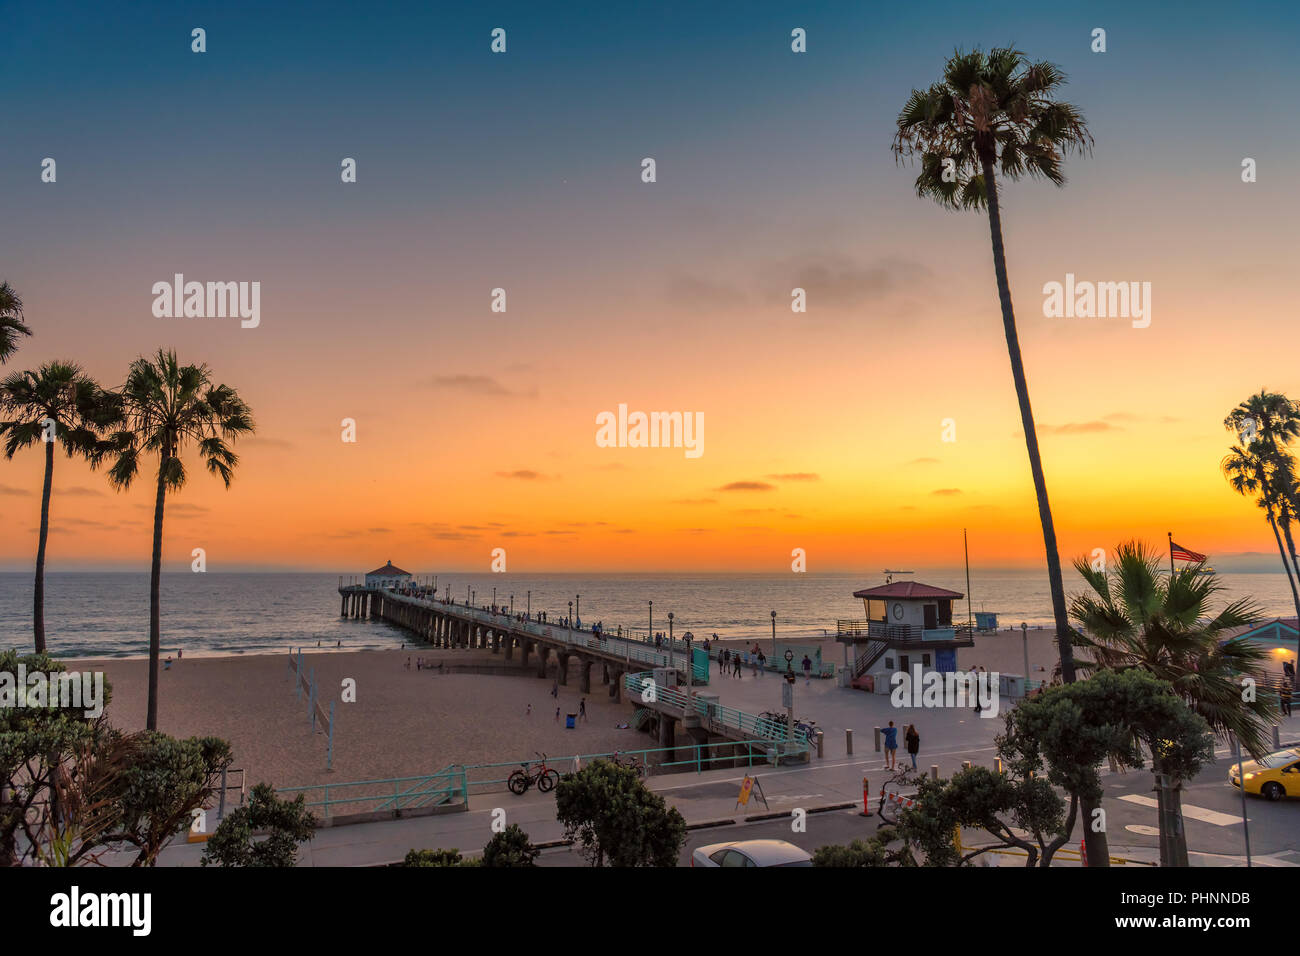 California beach at sunset Stock Photo